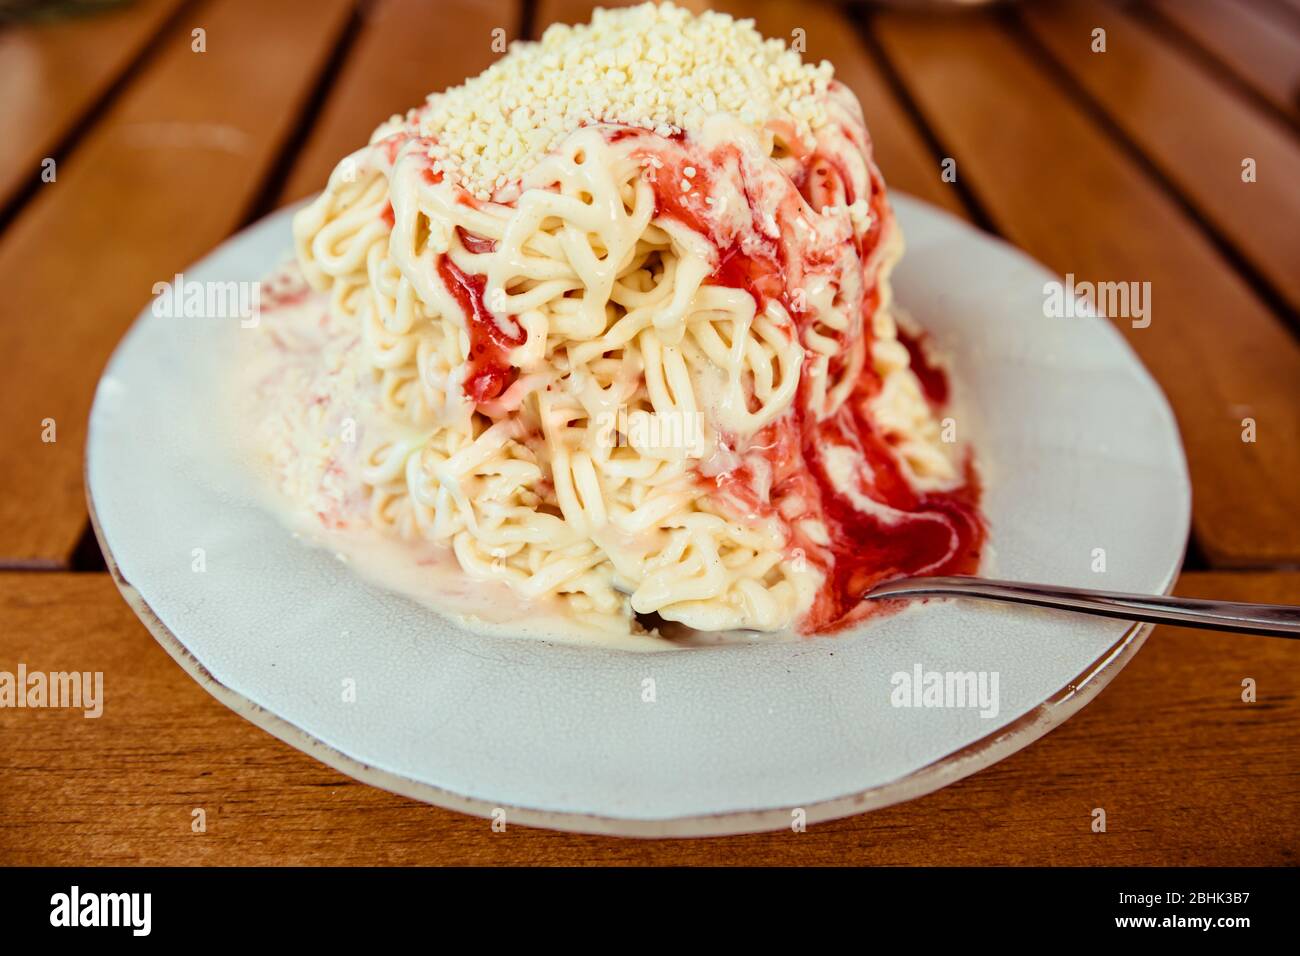 Una porzione dello spaghettieis tedesco di novità - gelato alla vaniglia e sambuco di fragola come un'illusione di spaghetti Foto Stock